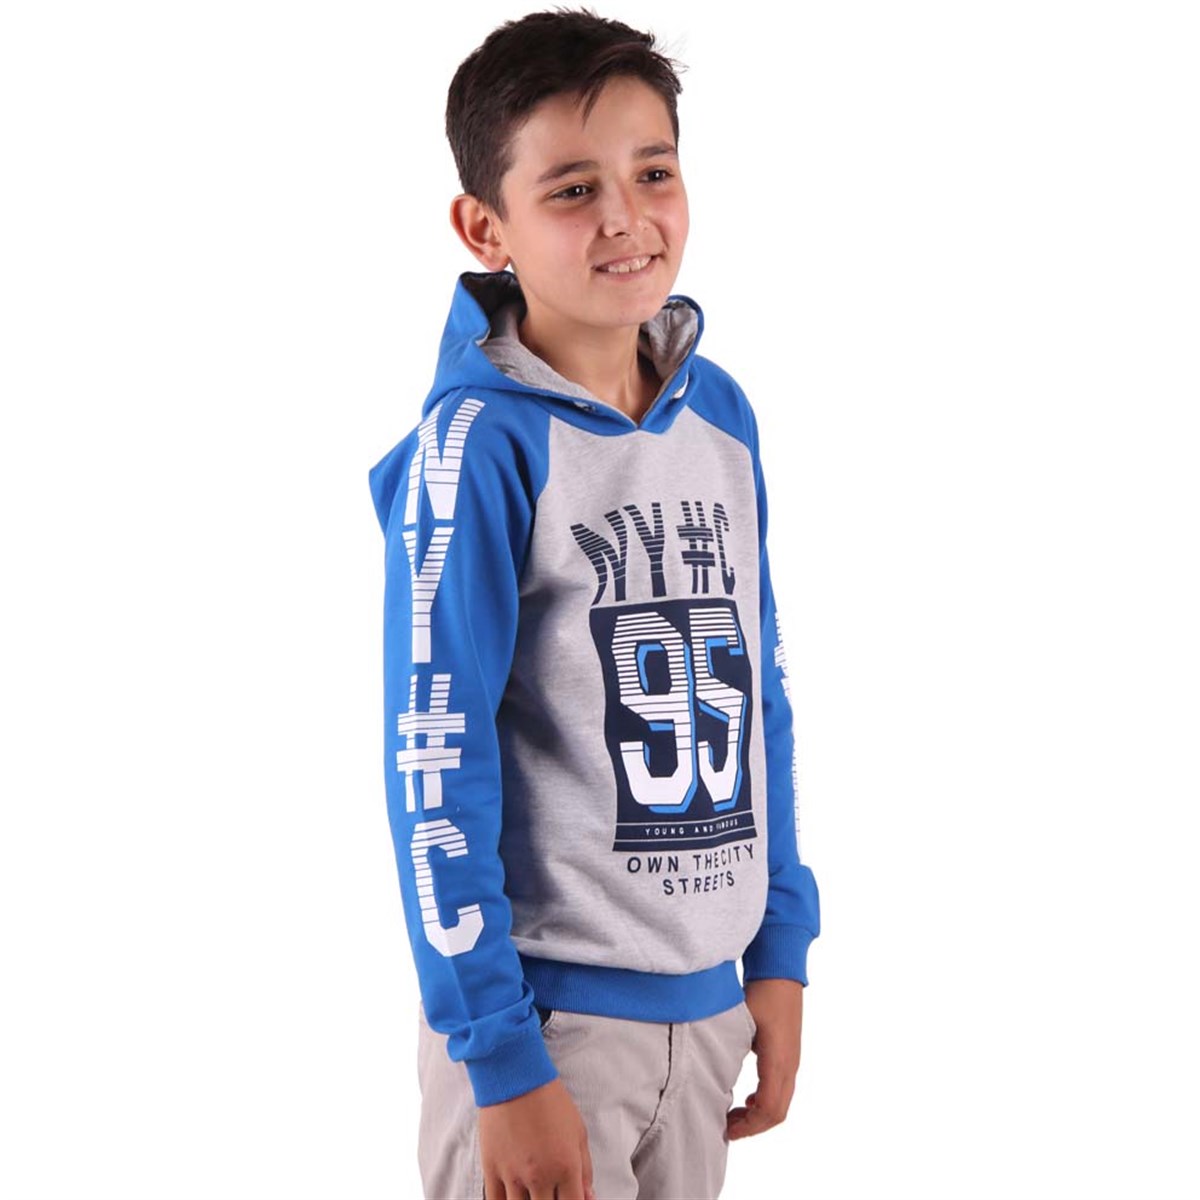 8-14 Yaş Mavi Gri - Erkek Çocuk Kapüşonlu Sweatshirt Modeli